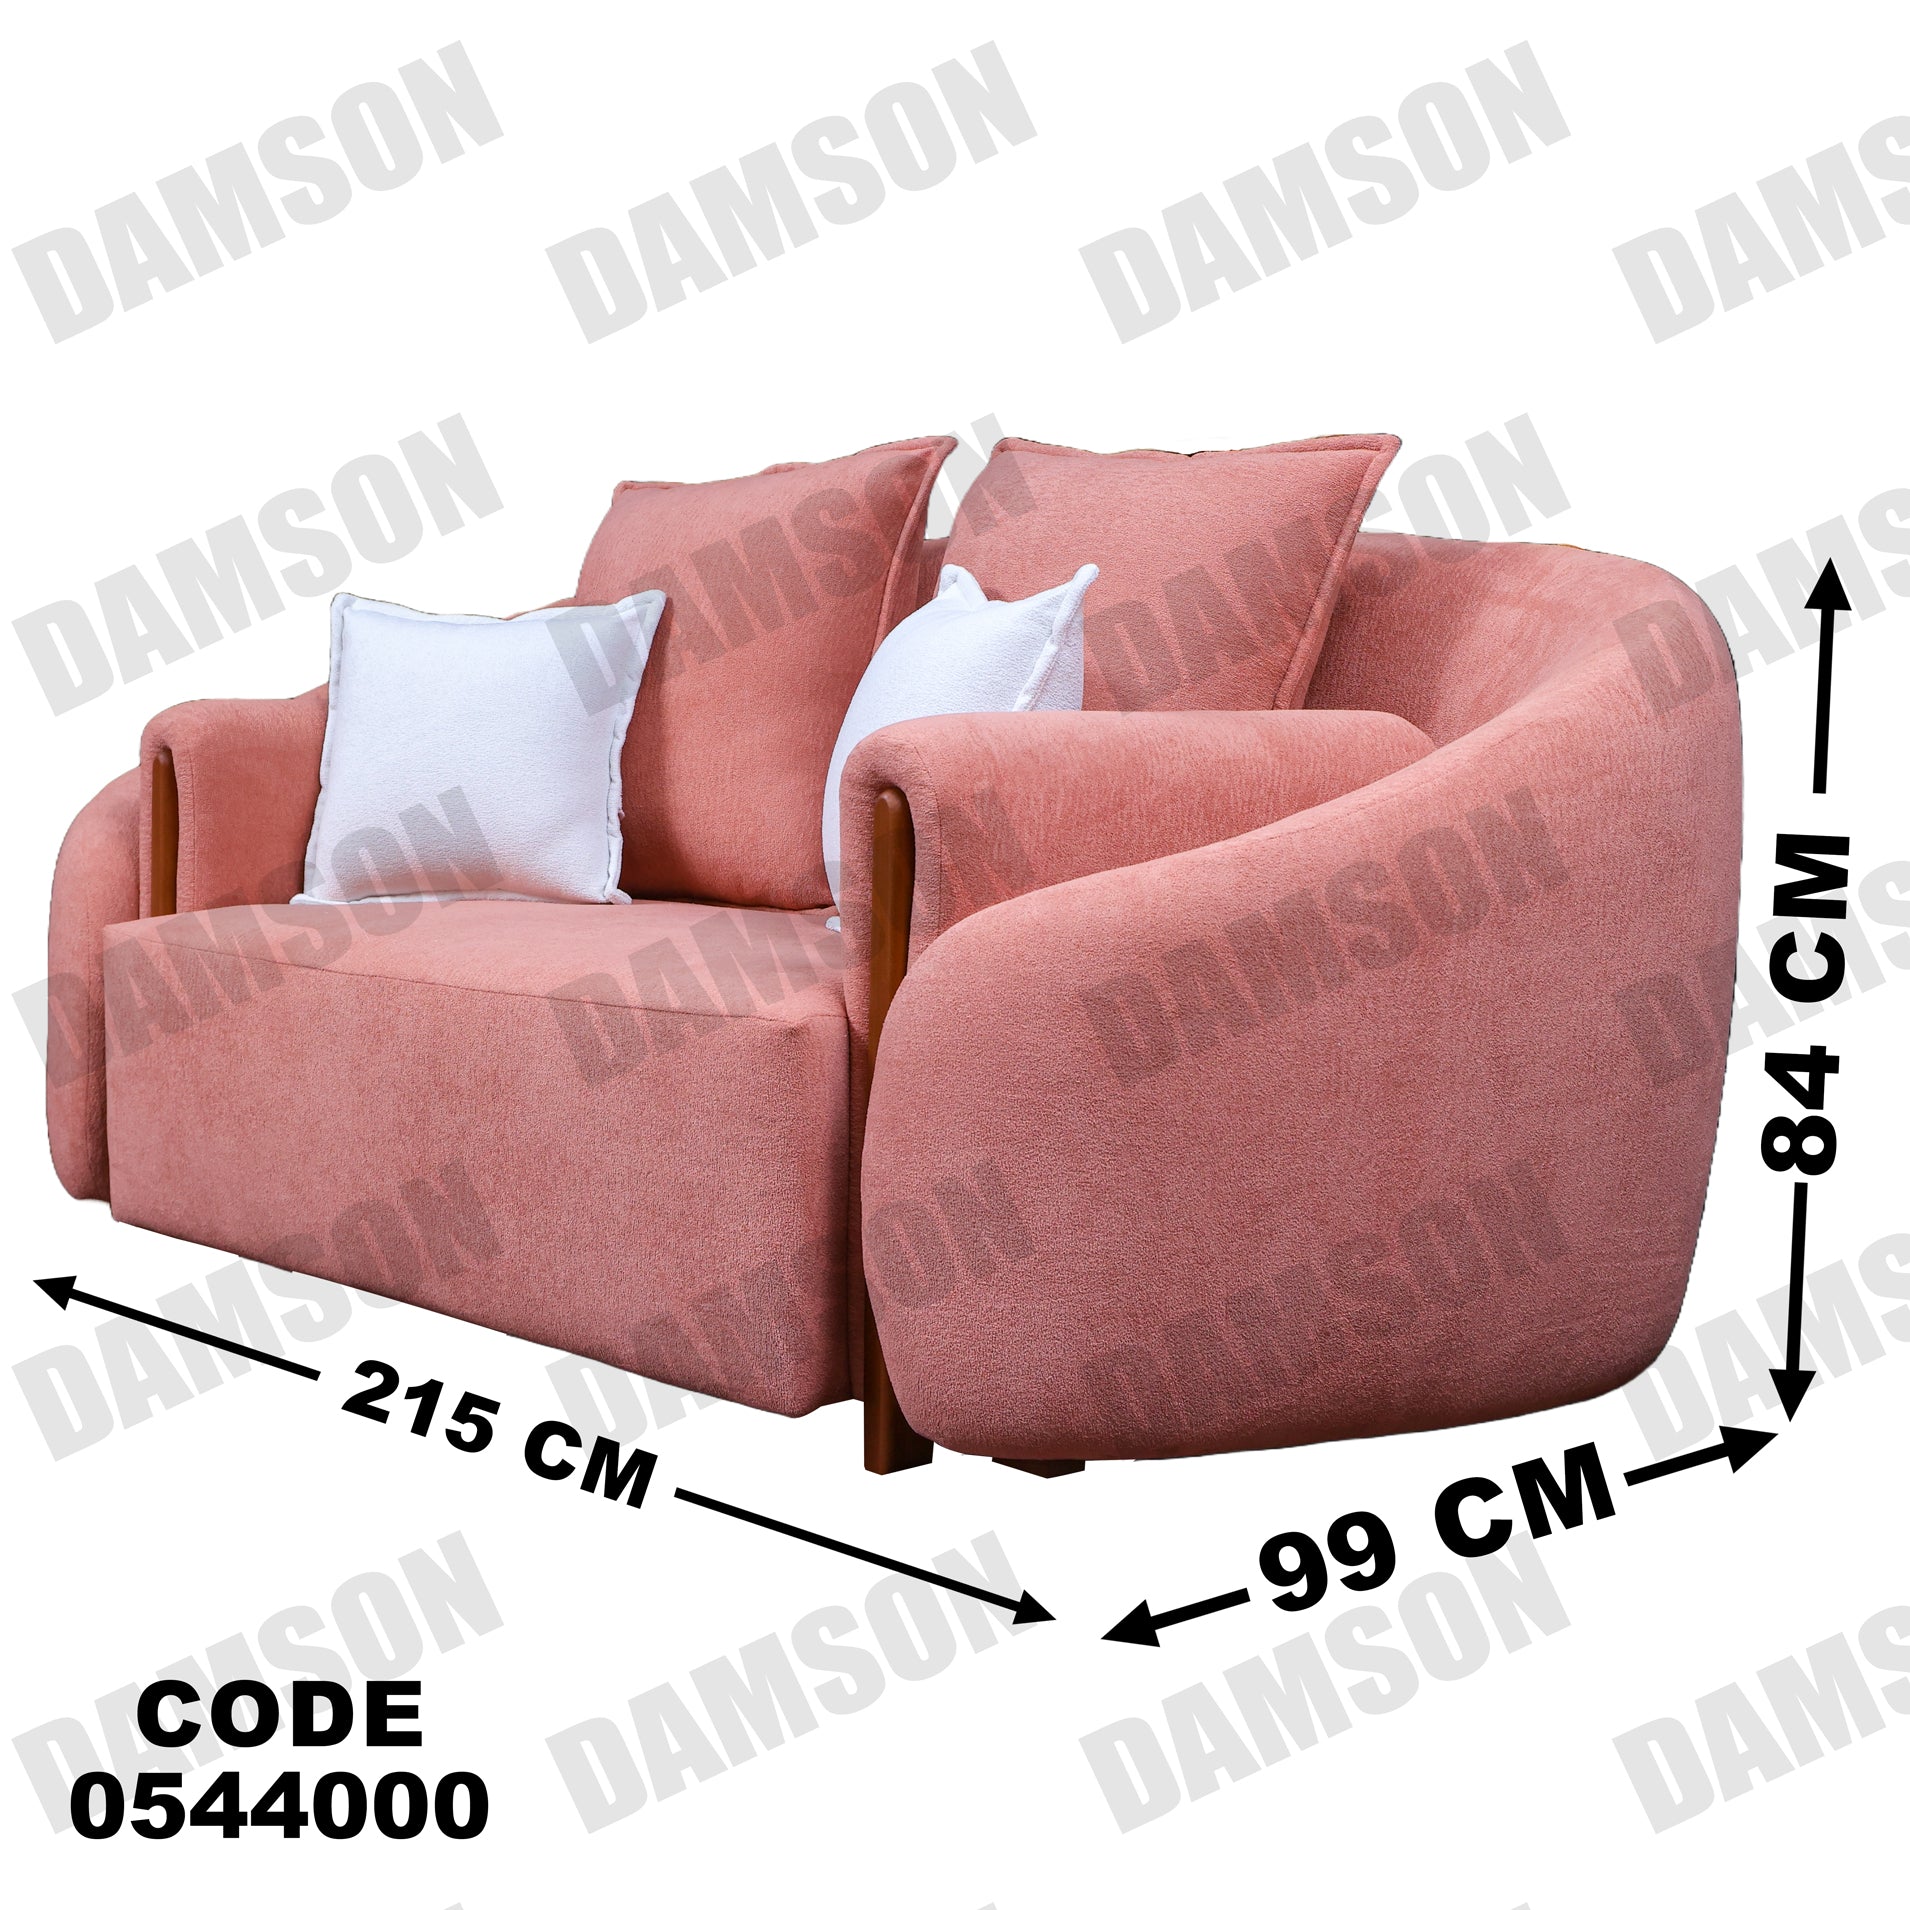 انترية 440 - Damson Furnitureانترية 440